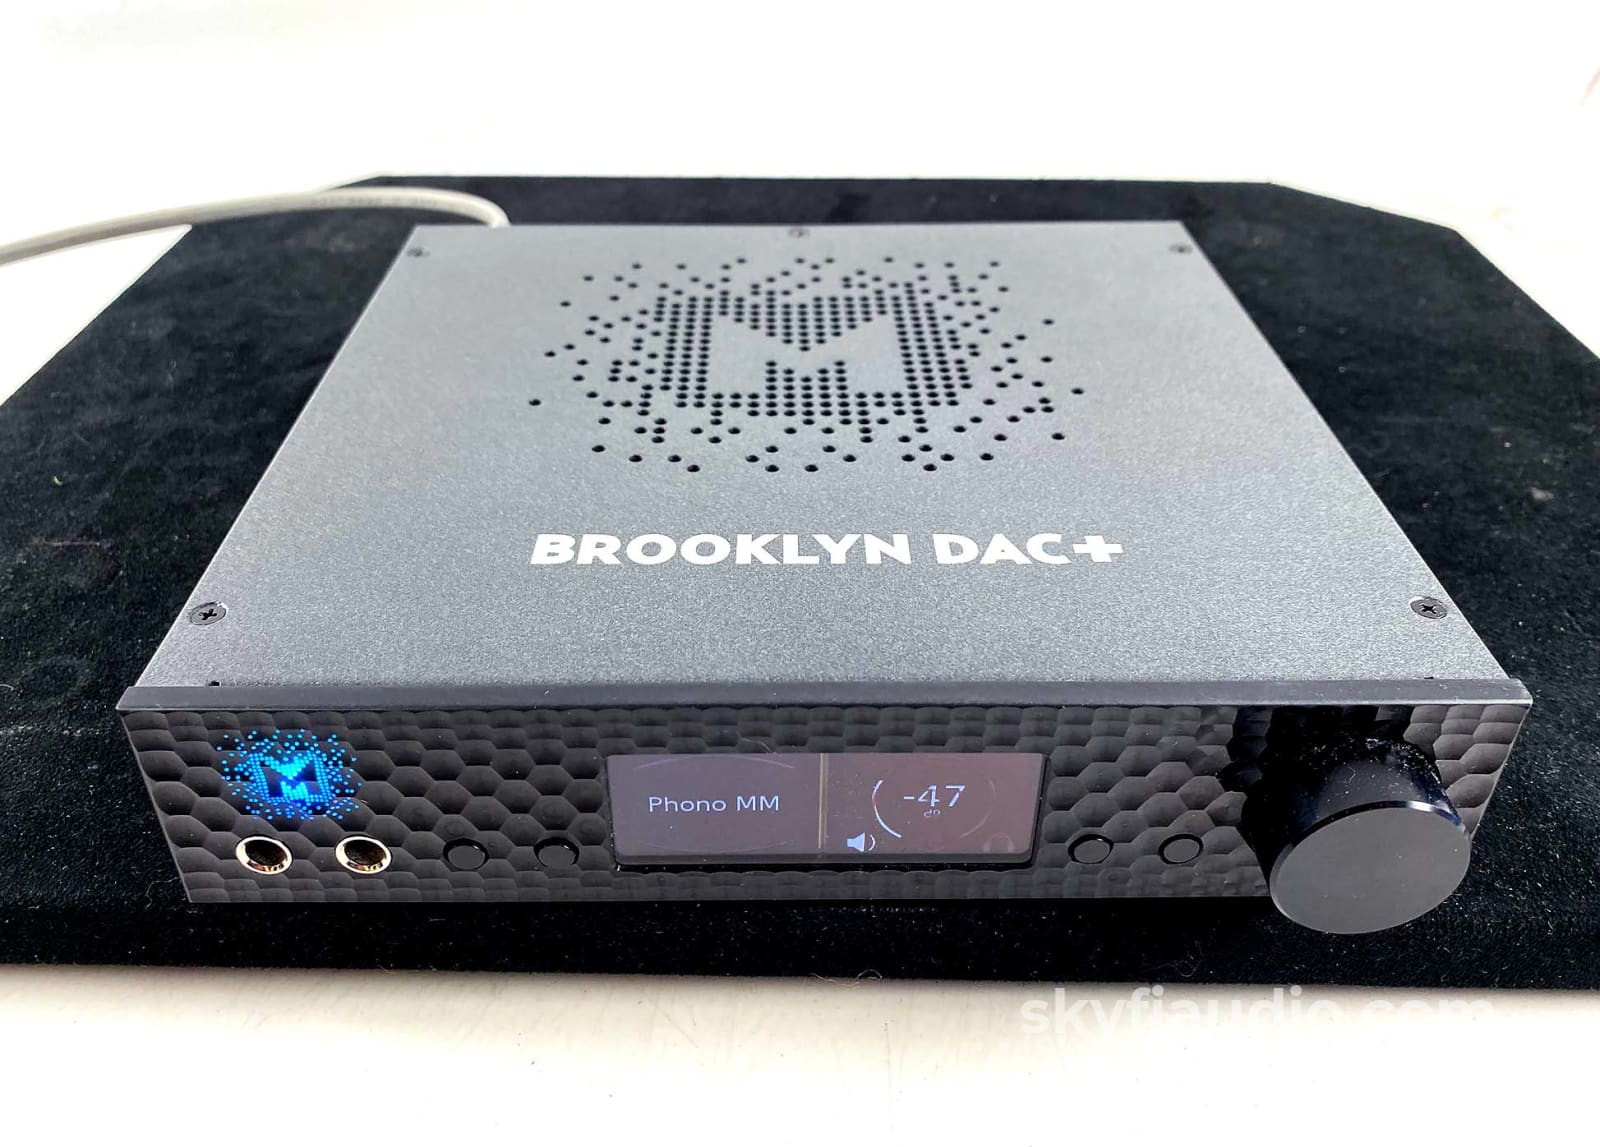 Mytek Brooklyn DAC + (Headphone Amp, Streamer/DAC, and 